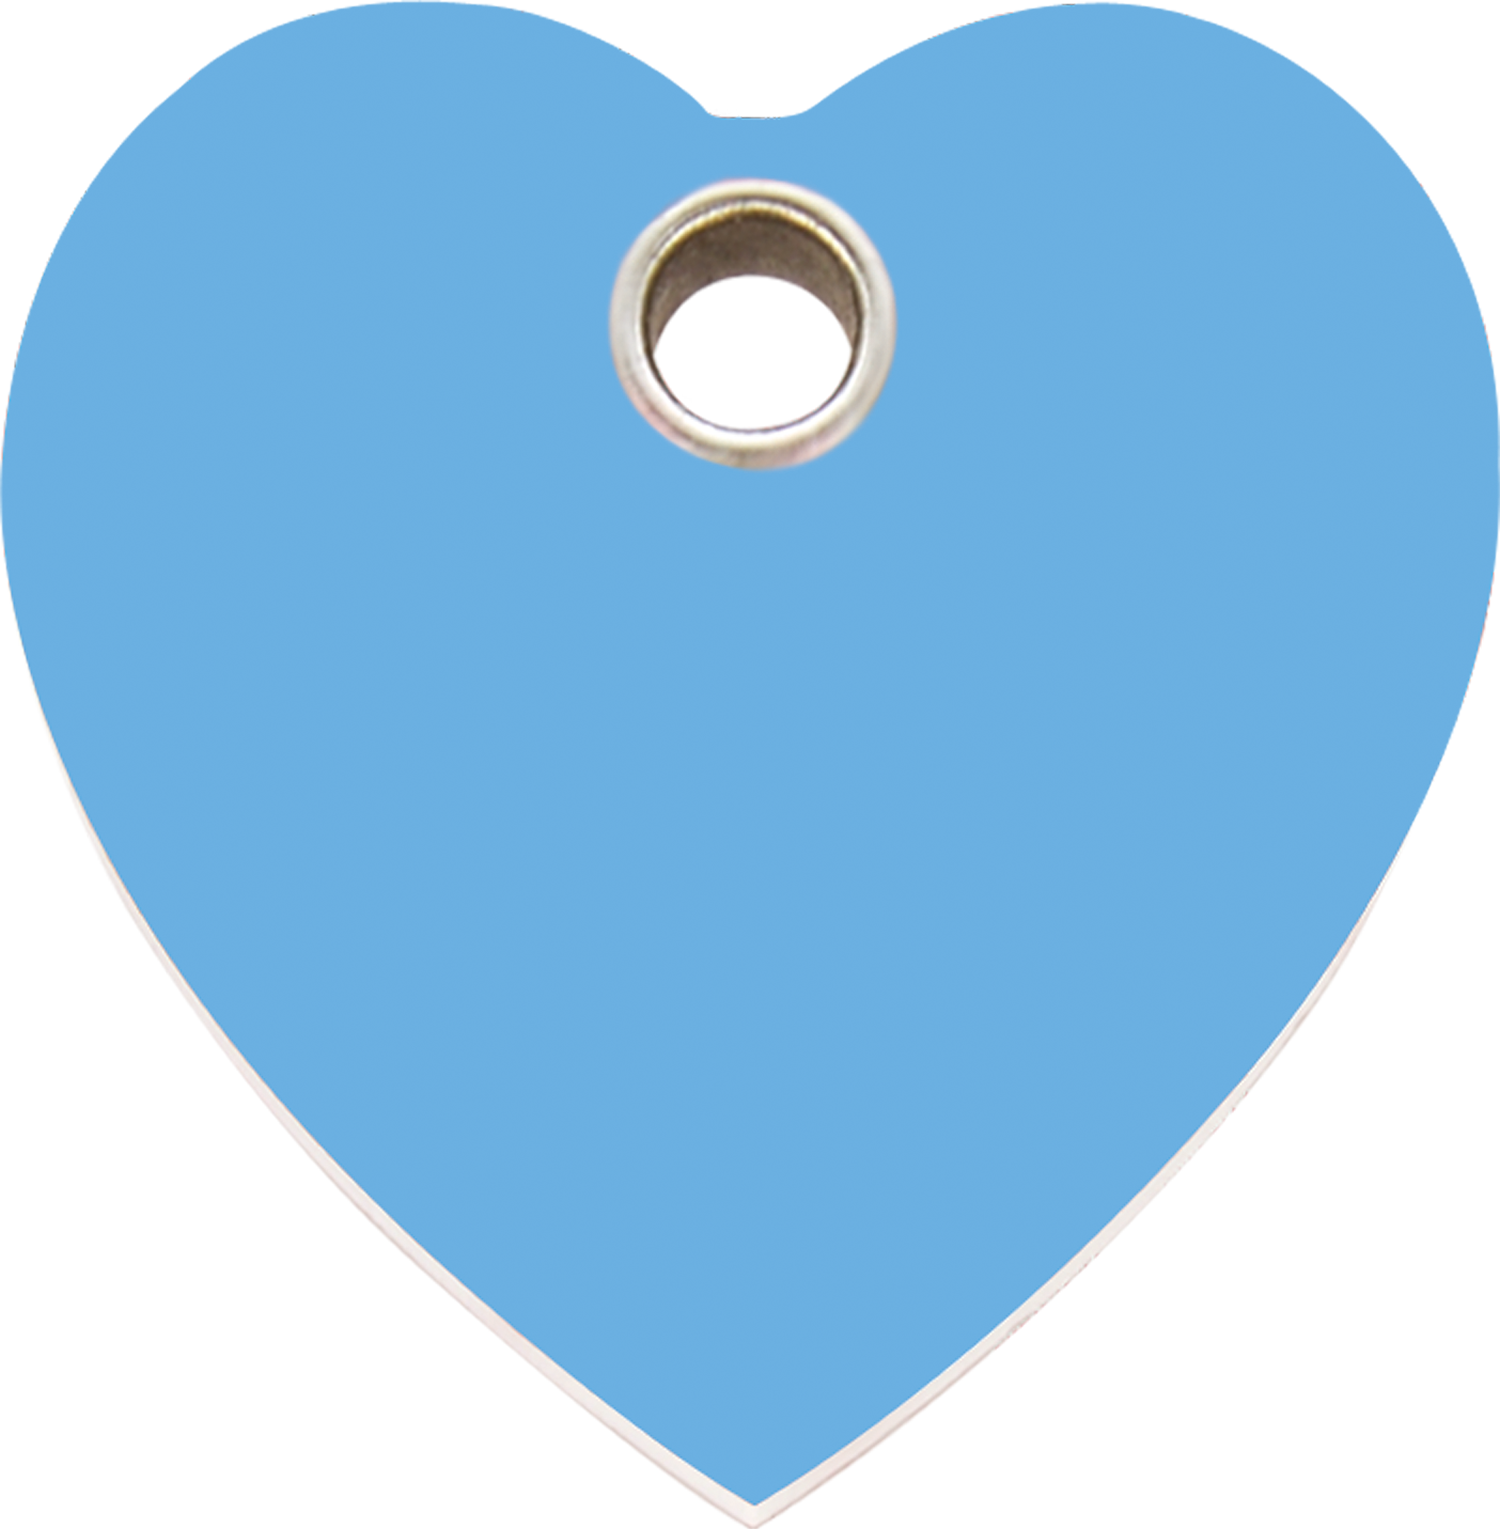 heart clipart light blue